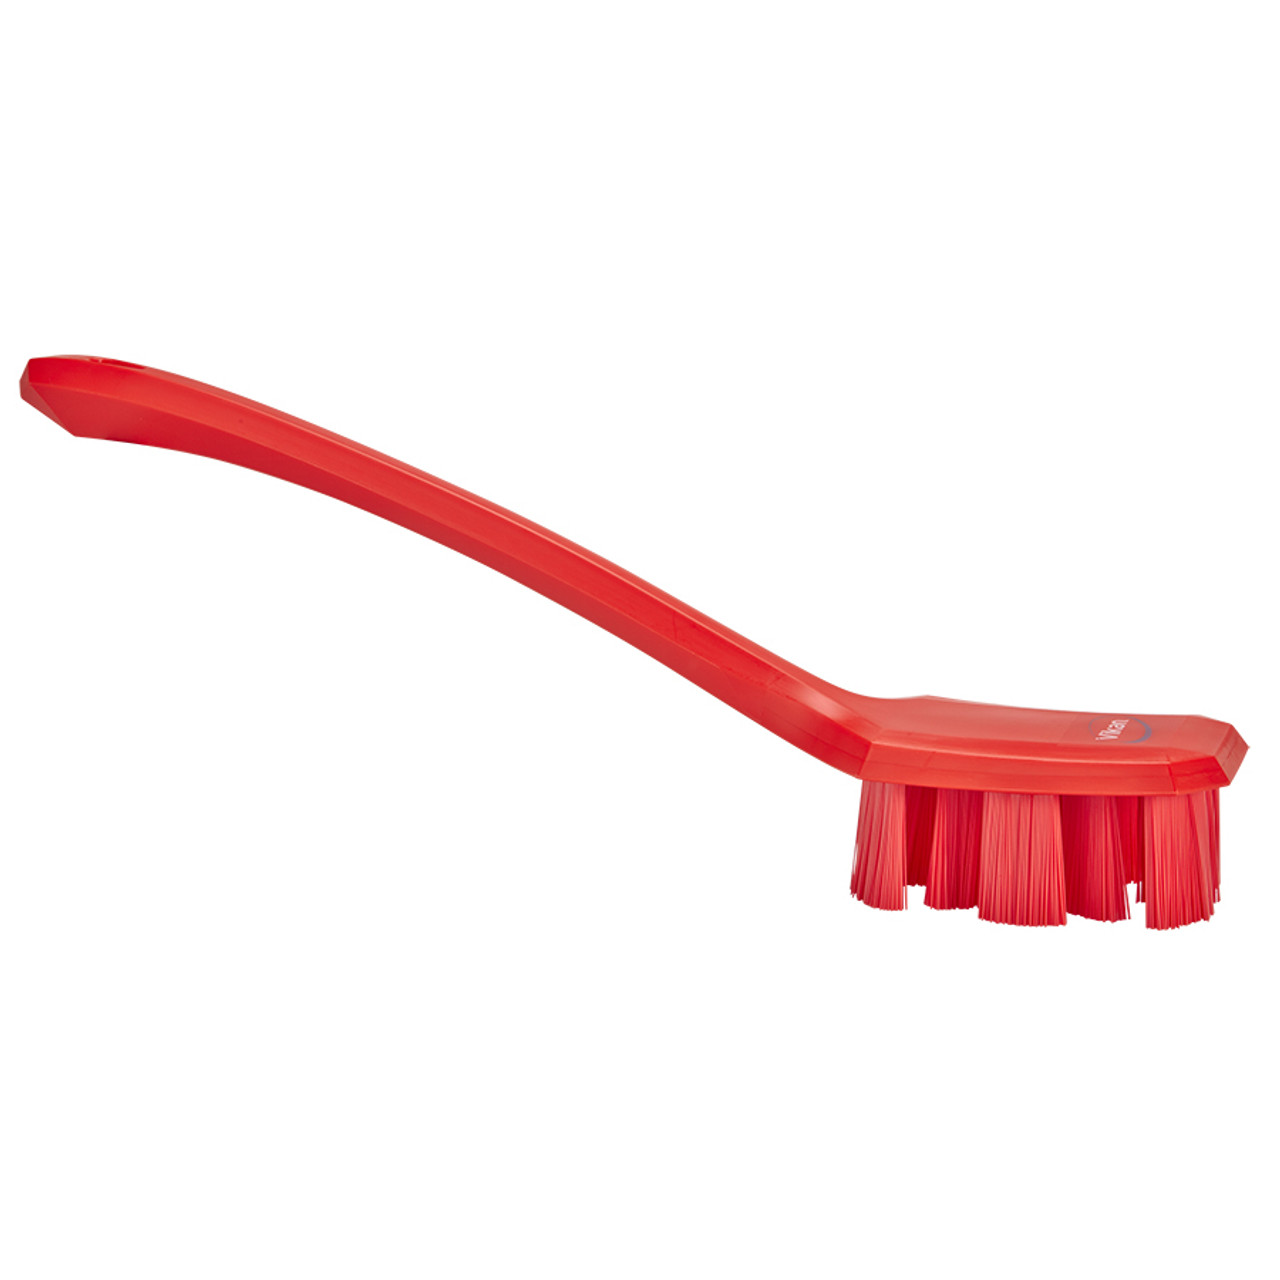 Vikan 3890 Hand Scrub Brush - Stiff - Red